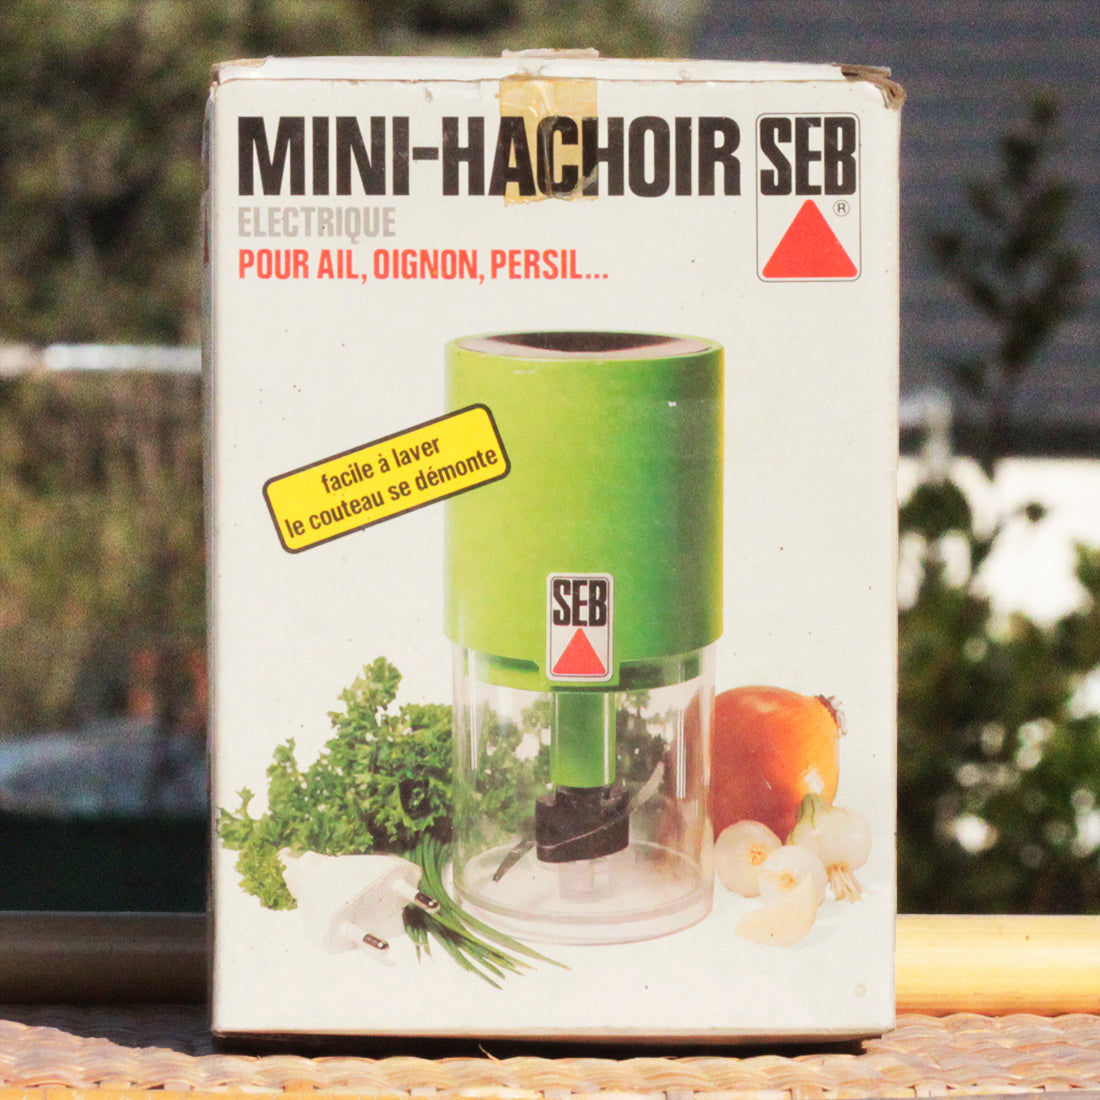 Mini - Hachoir / SEB / 24,90€ Post